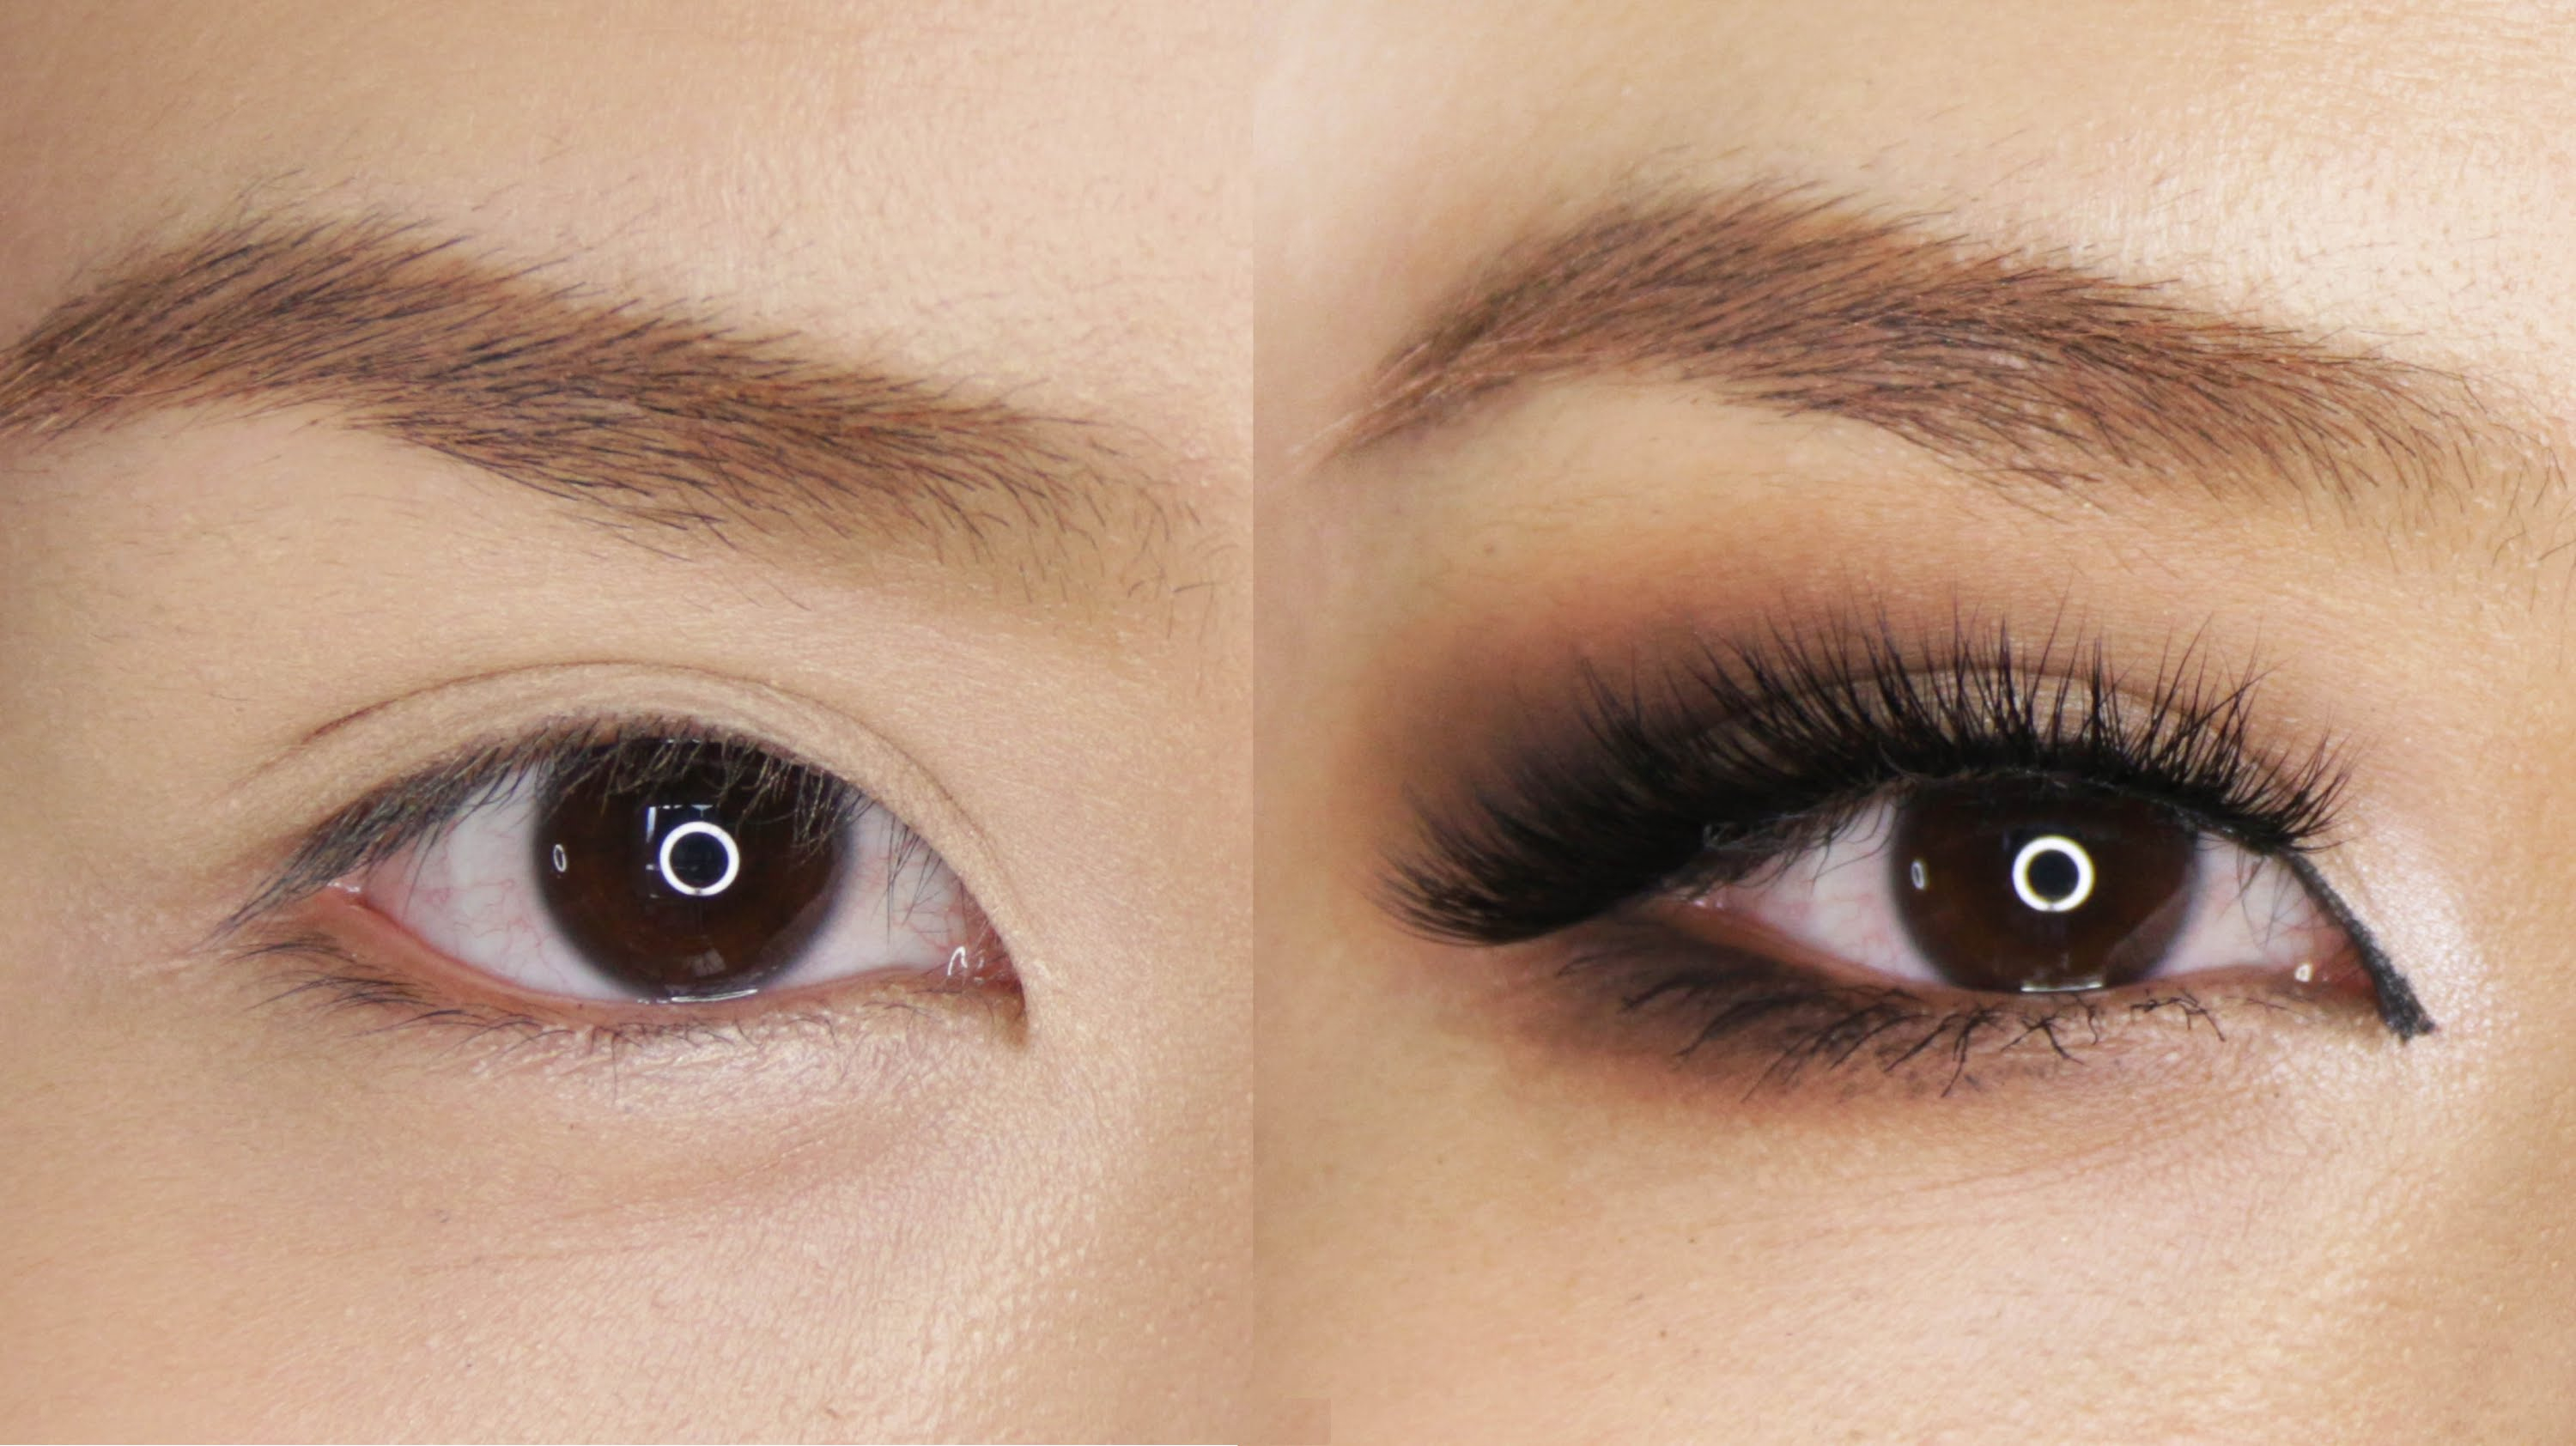 Asian Eye Makeup Tutorial Smokey Eye Makeup For Hooded Or Asian Eyes